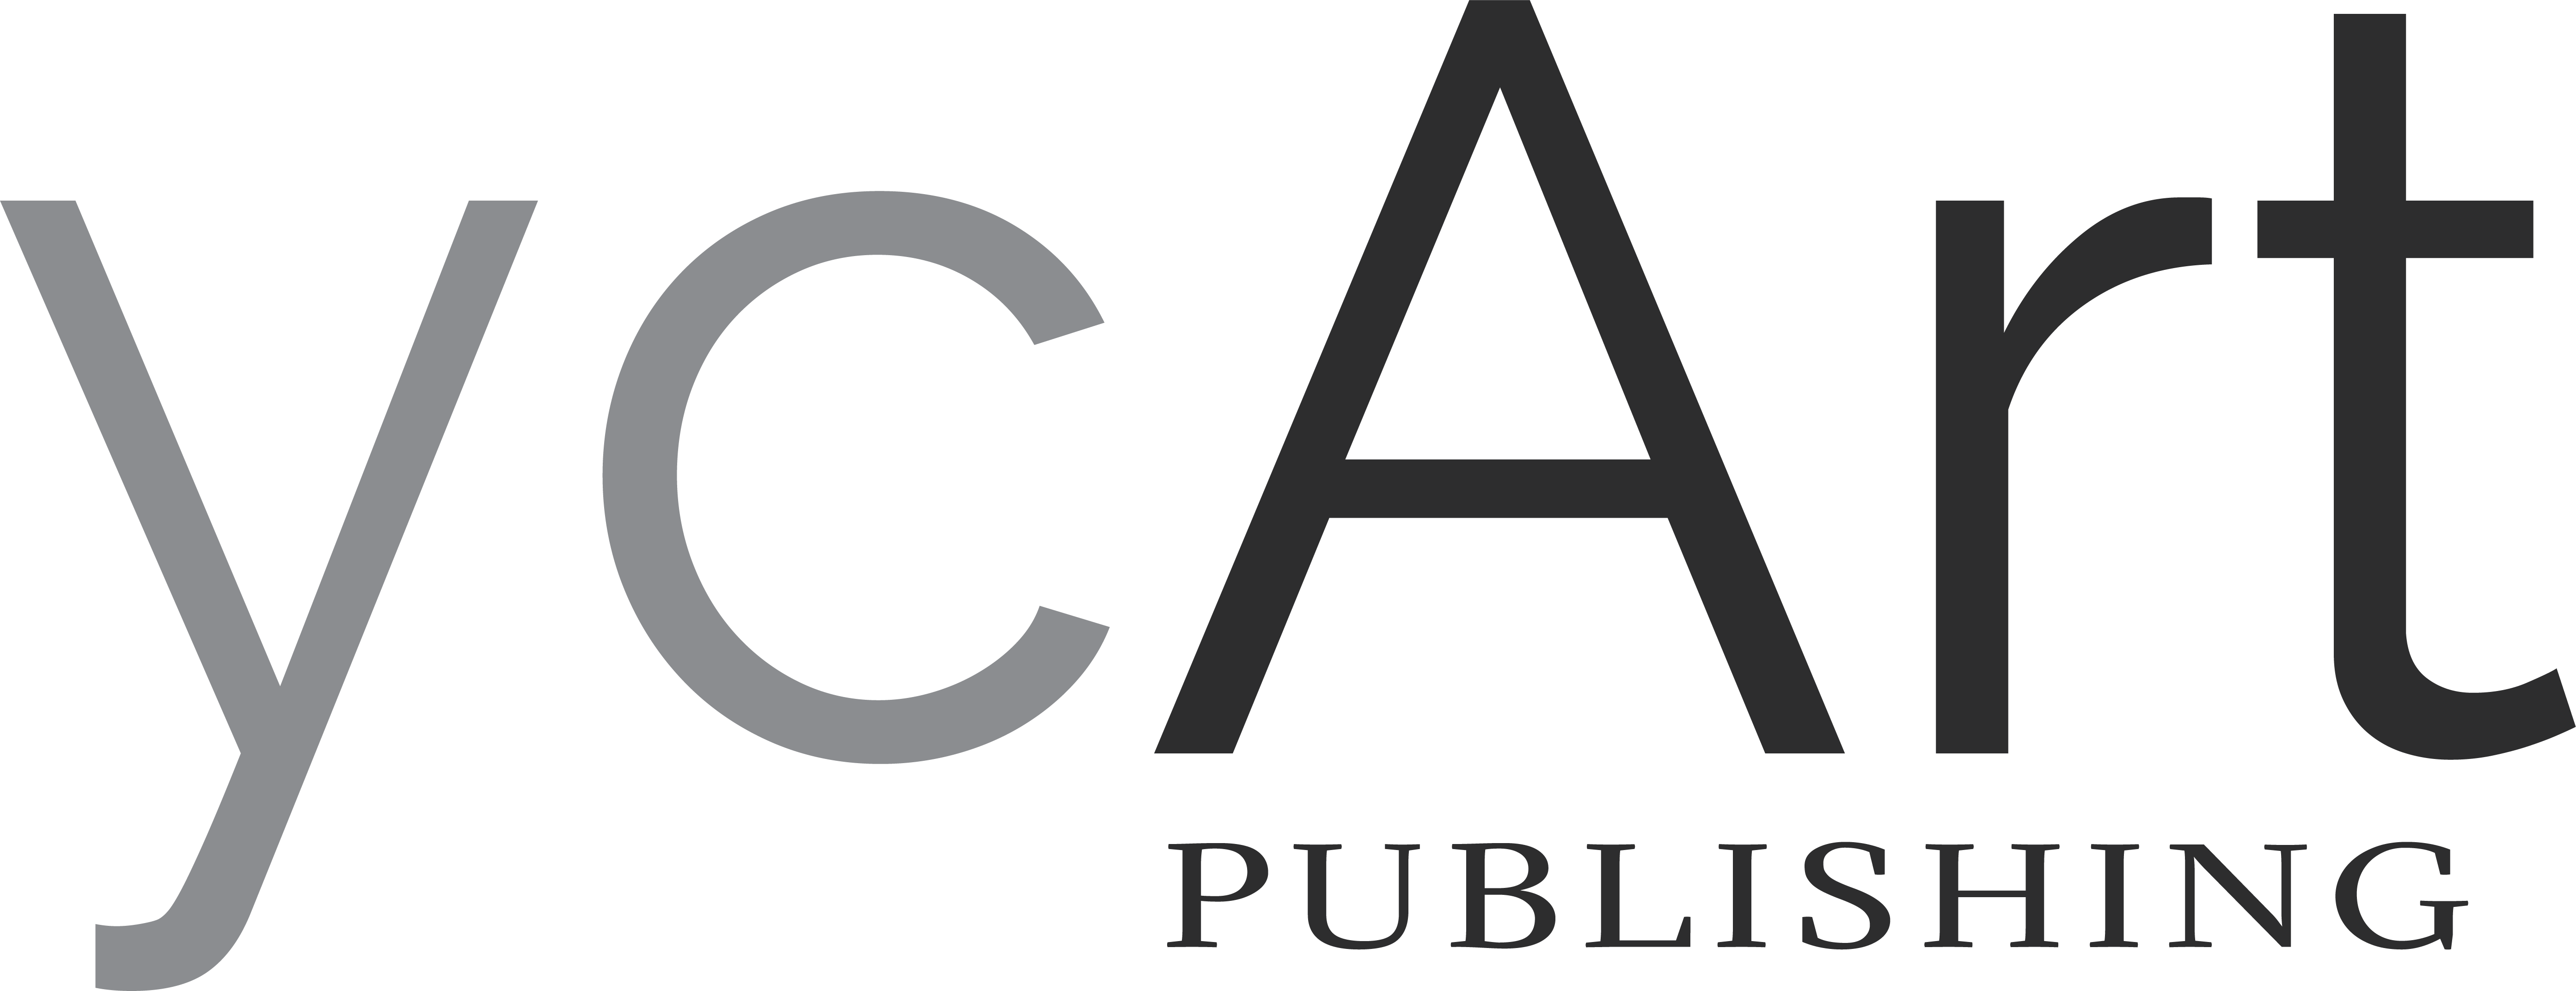 ycArt-Publishing Logo